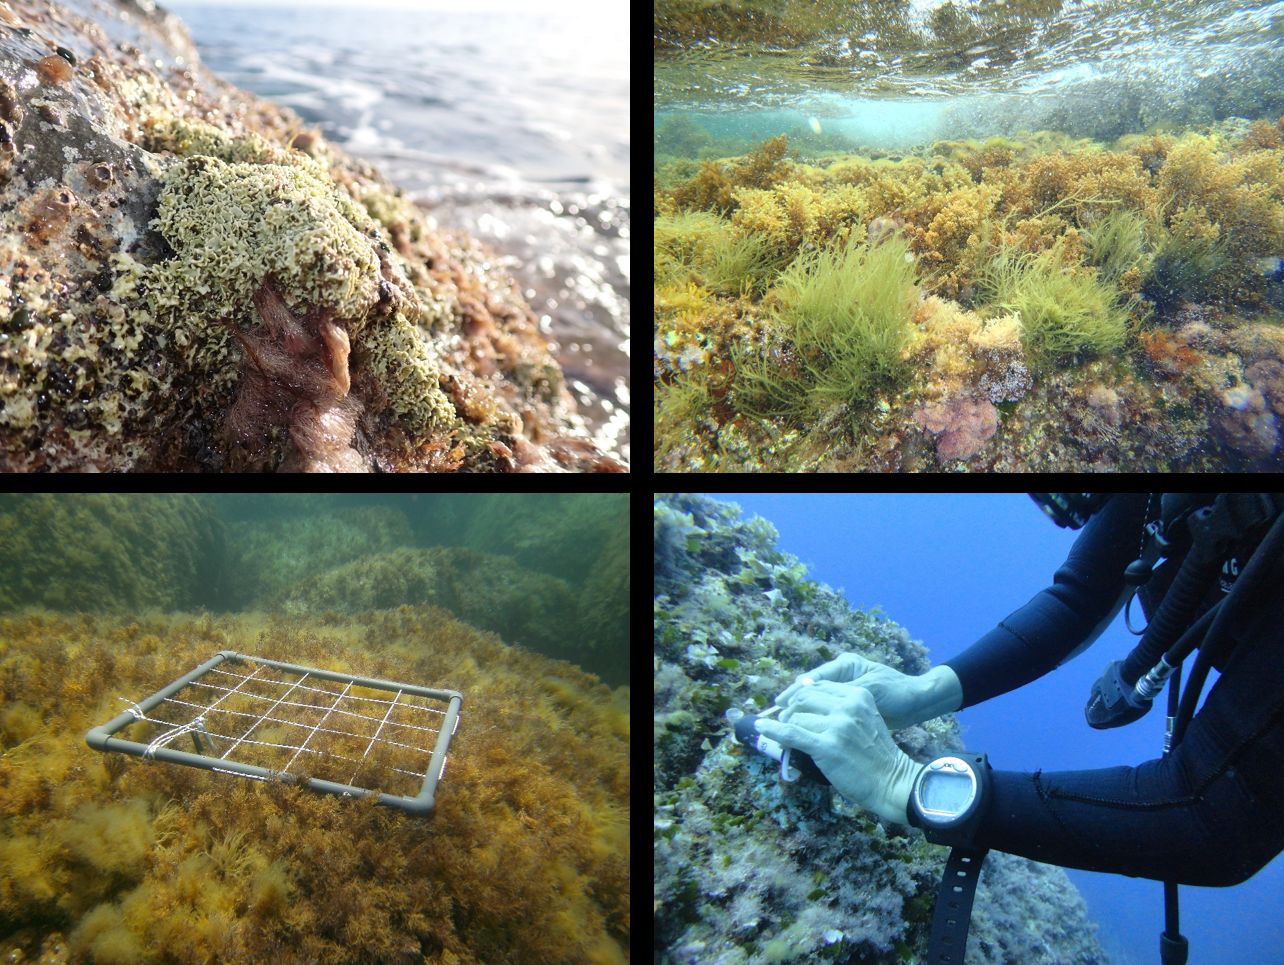 Diferentes muestreos realizados en aguas de Menorca por los equipos de investigación. © Estación de Investigación Jaume Ferrer / Centro Oceanográfico de Baleares - IEO-CSIC.